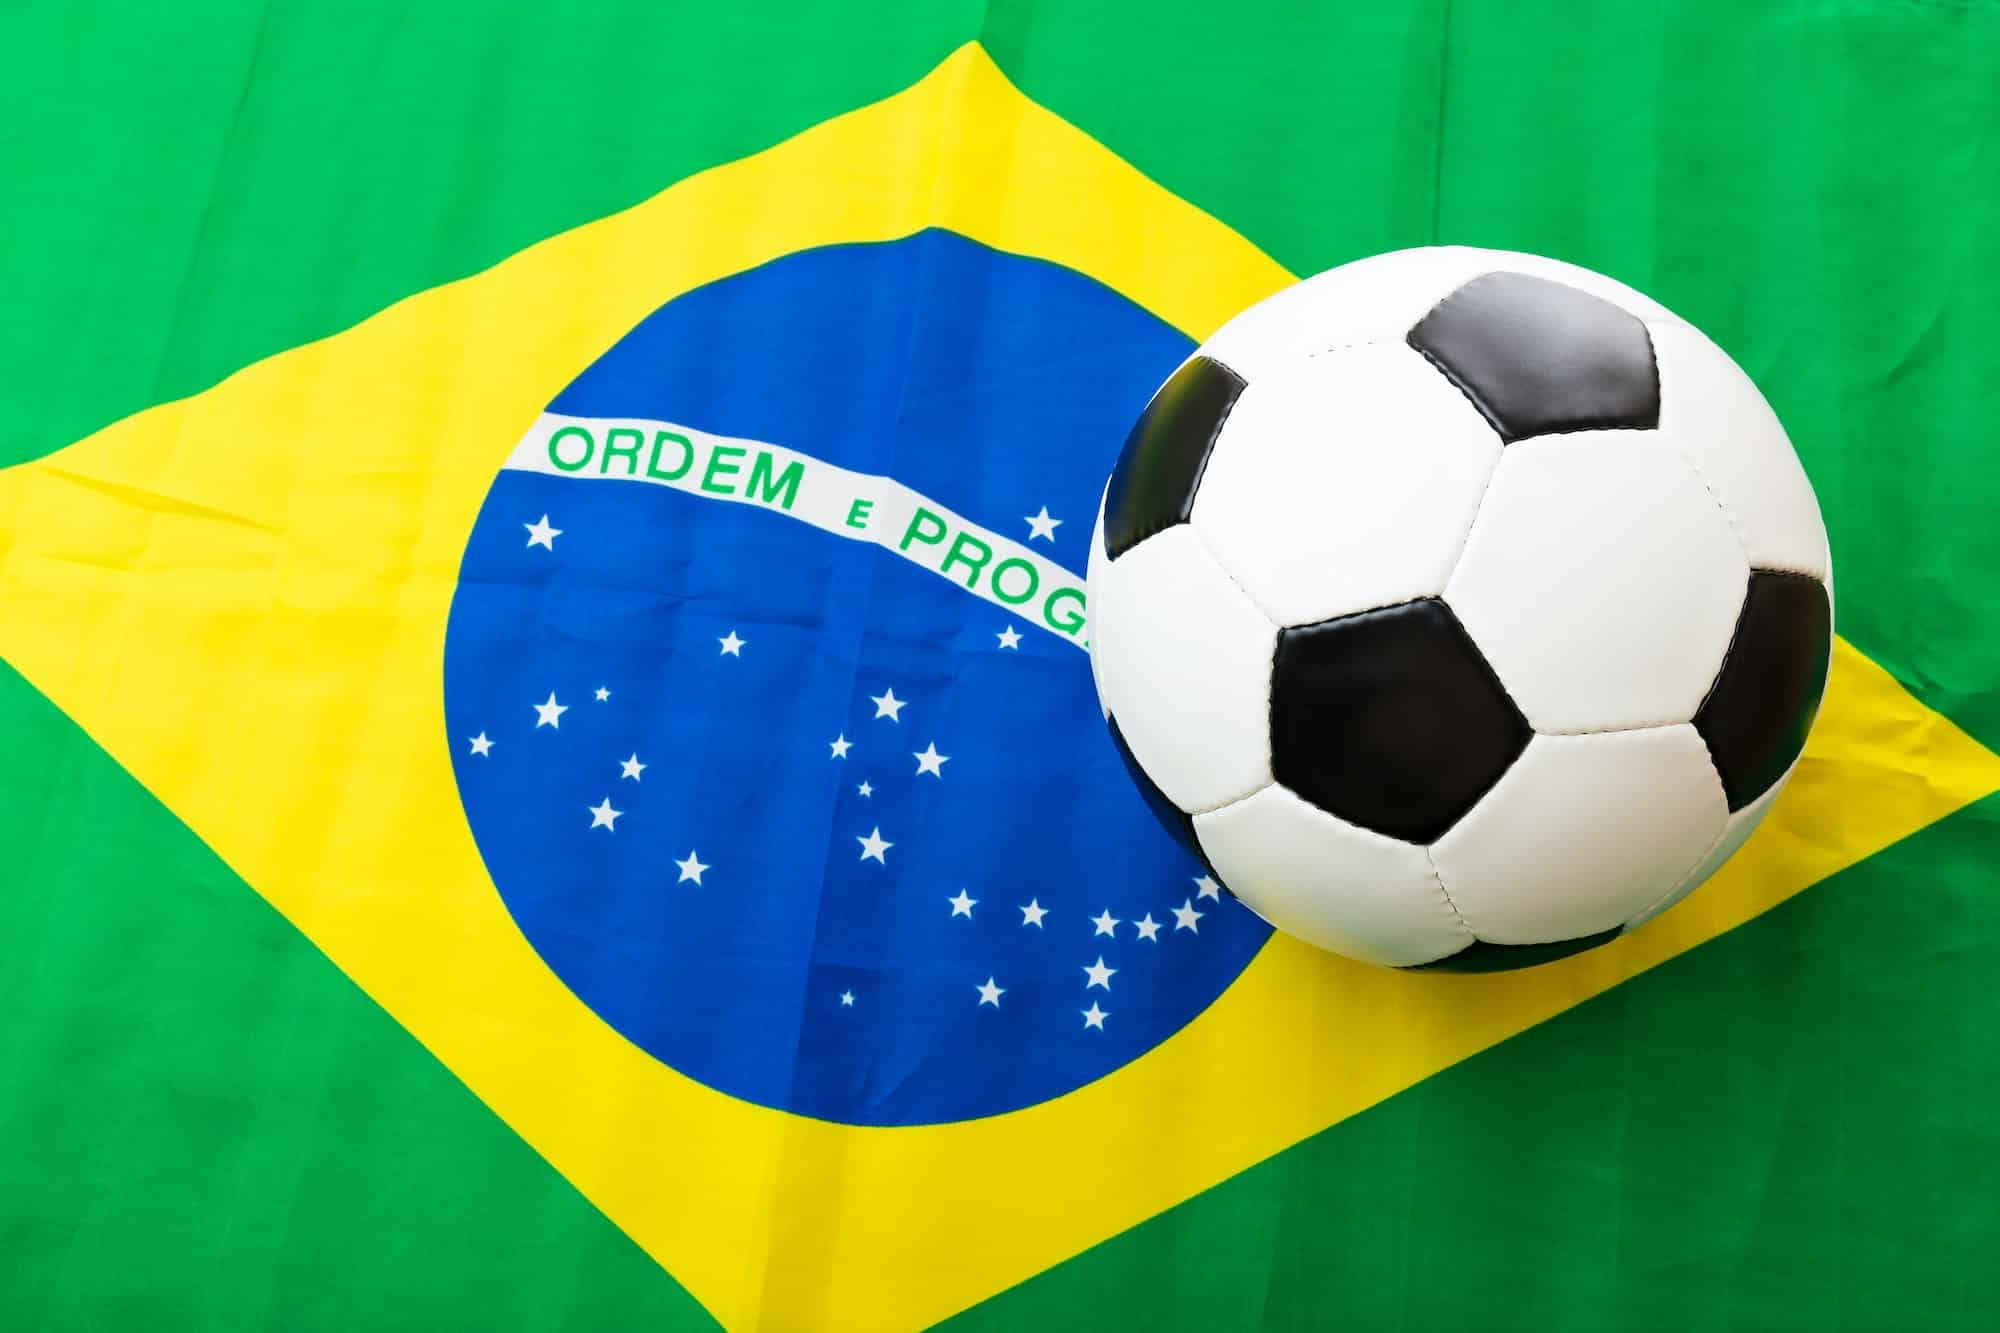 Brazil Flag and soccer ball